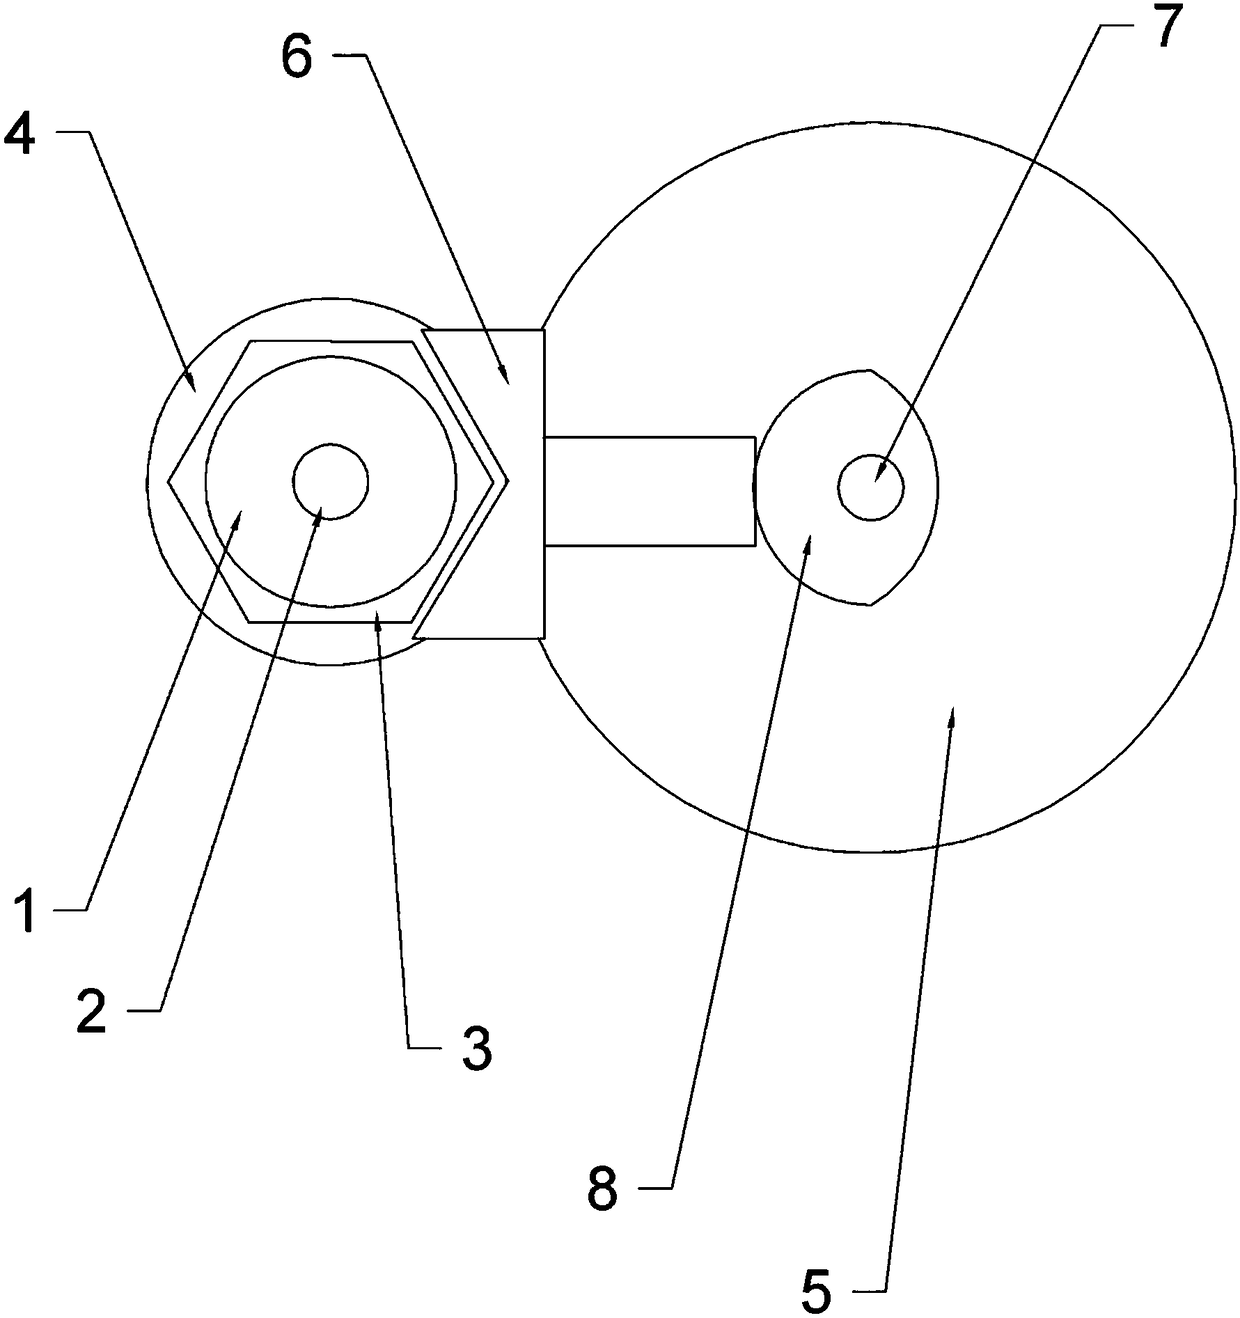 Polishing device for rotating shaft of washing machine